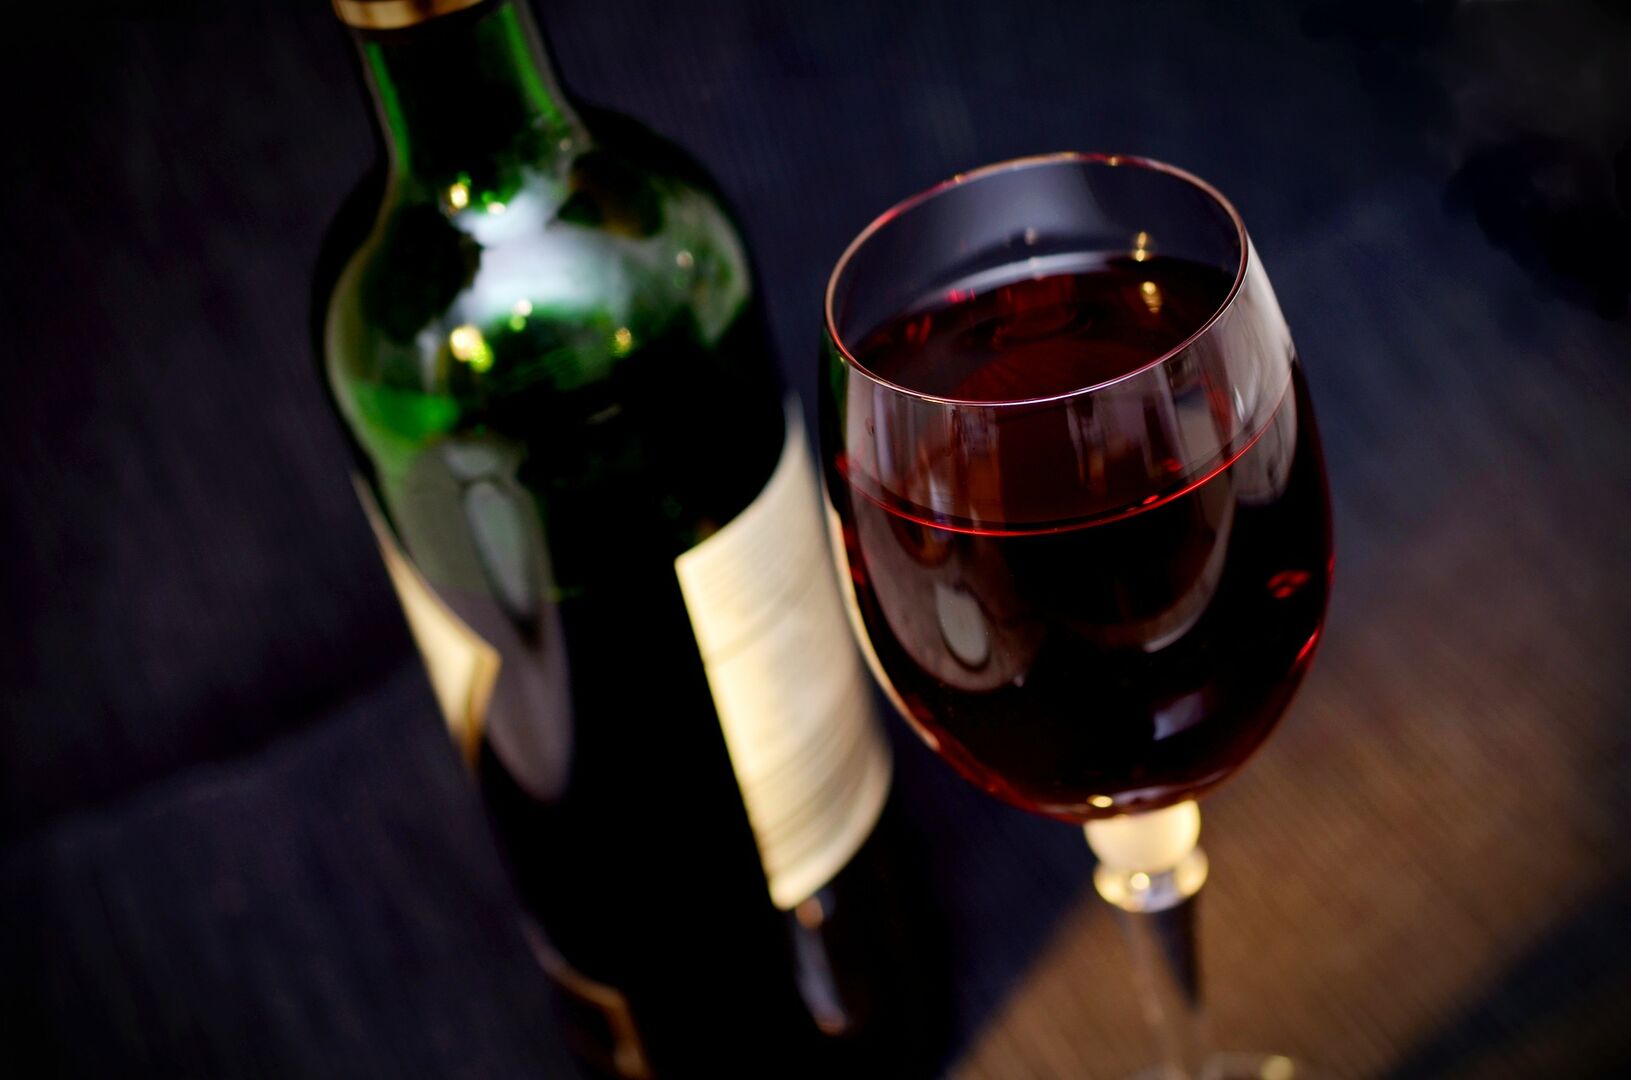 https://s.libertaddigital.com/2018/04/04/1920/1080/fit/vino-vino-tinto-vidrio-beber-el-alcohol-beneficiarse-de-copa-de-vino-rojo-vino-vino-vino-tinto-vino-tinto-vino-tinto-vino-tinto-vino-t.jpg